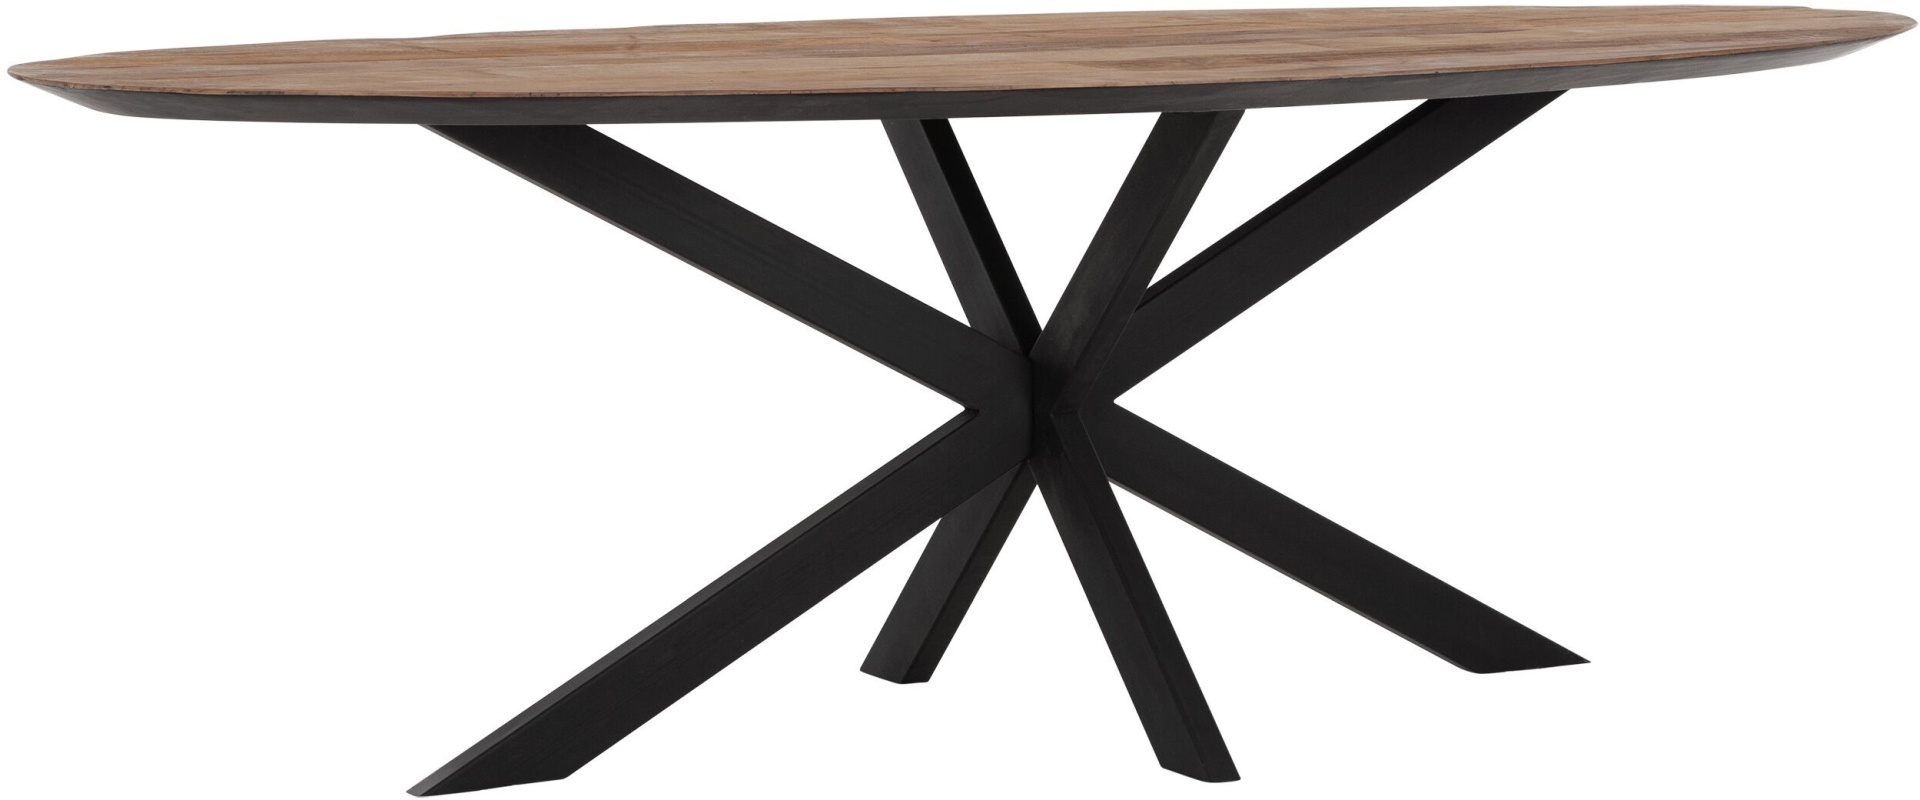 Der Esstisch Shapes überzeugt mit seinem modernem aber auch massivem Design. Gefertigt wurde der Tisch aus recyceltem Teakholz, welches einen natürlichen Farbton besitzt. Das Gestell ist aus Metall und ist Schwarz. Der Tisch hat eine Länge von 240 cm.